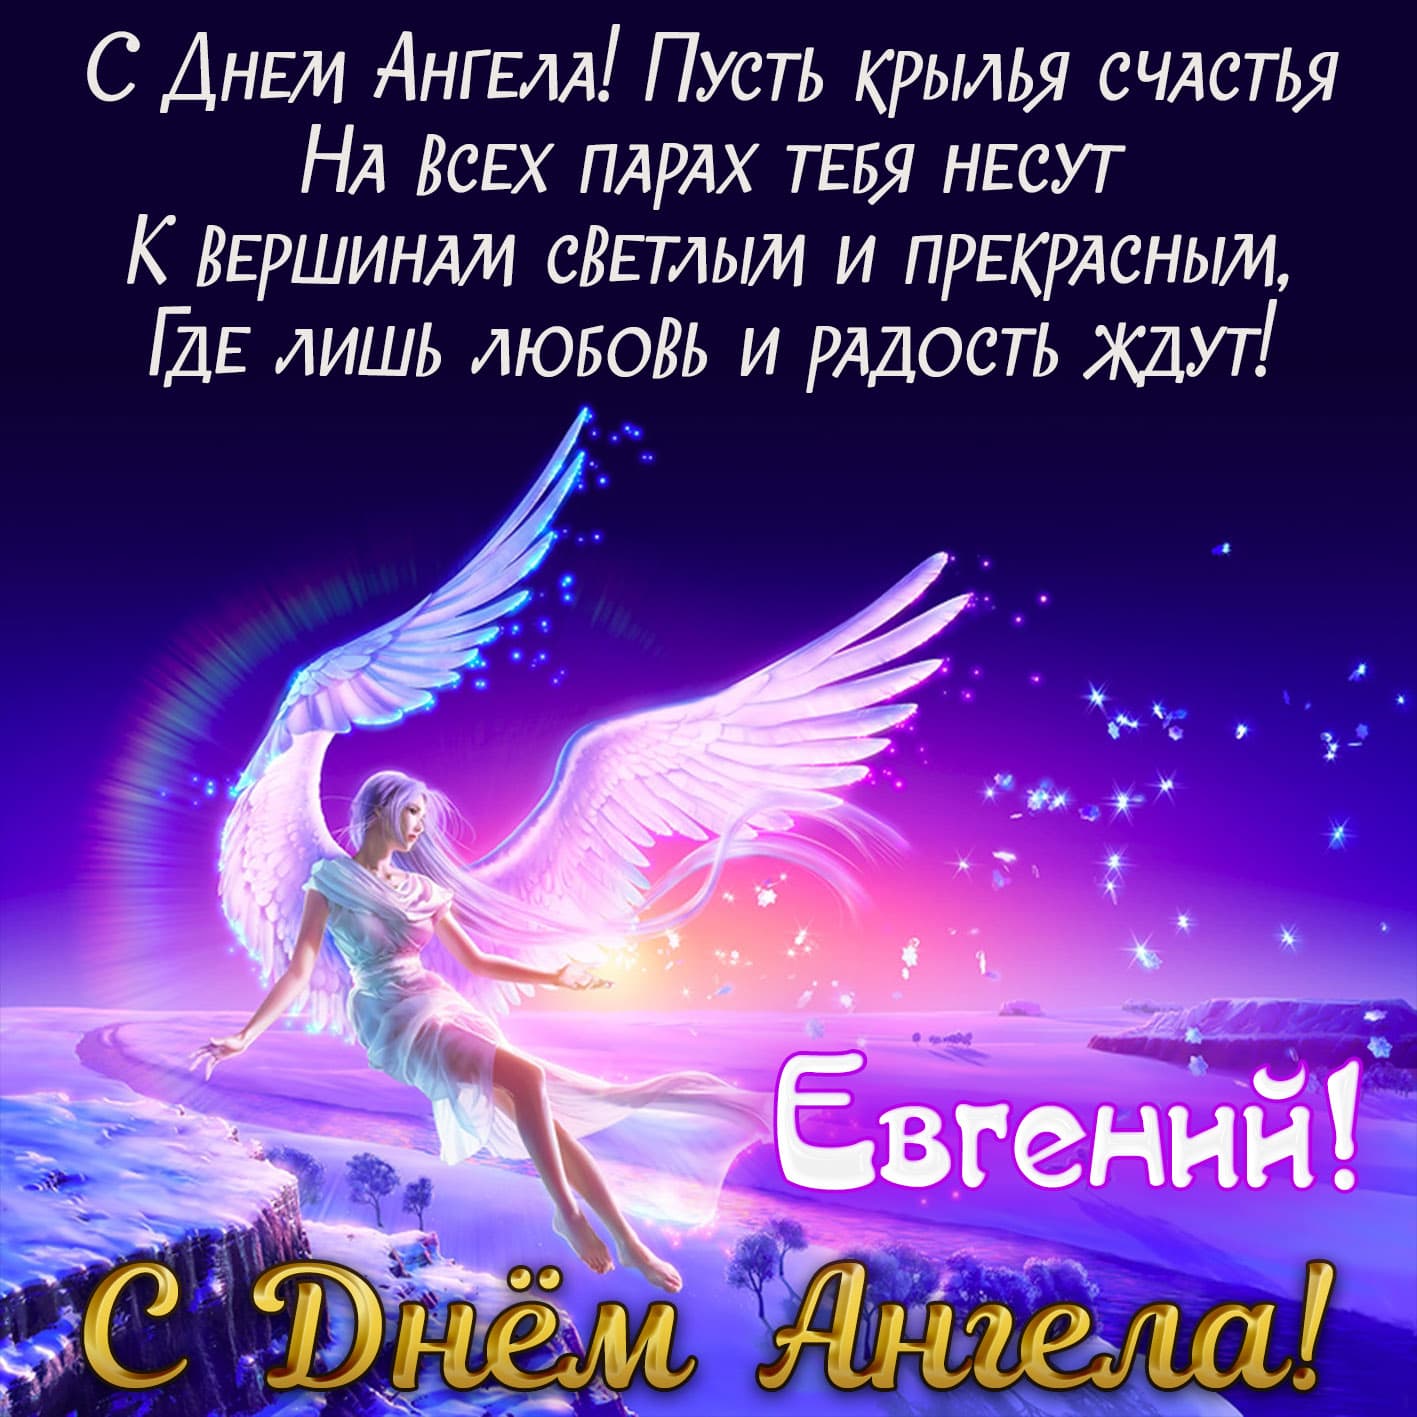 Яркая поздравительная открытка с днем ангела, евгений